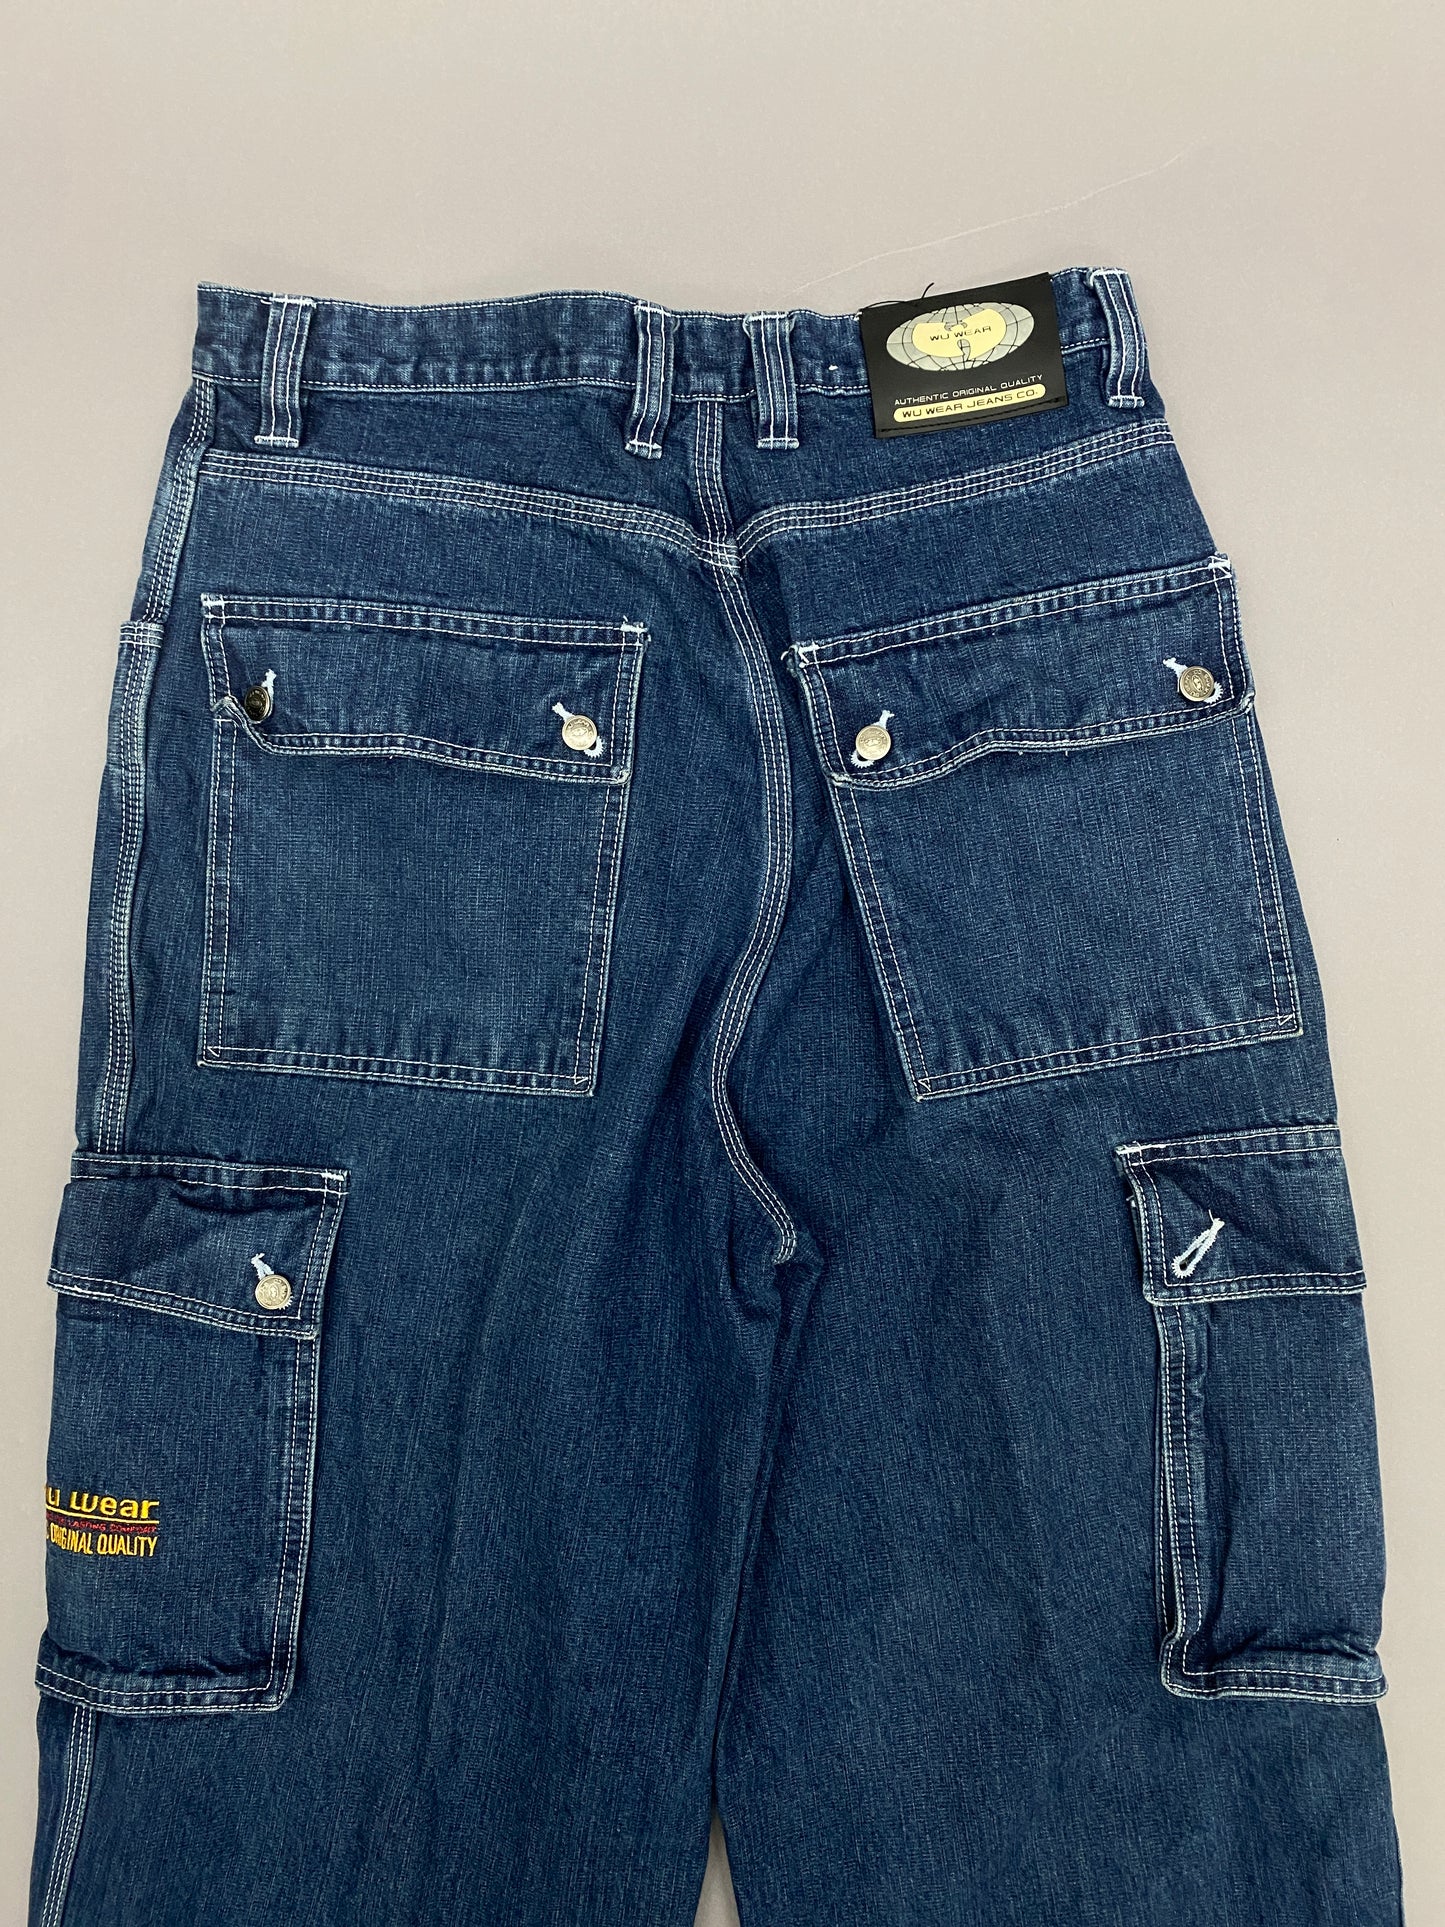 Wu Wear Vintage Cargo Pants - 30